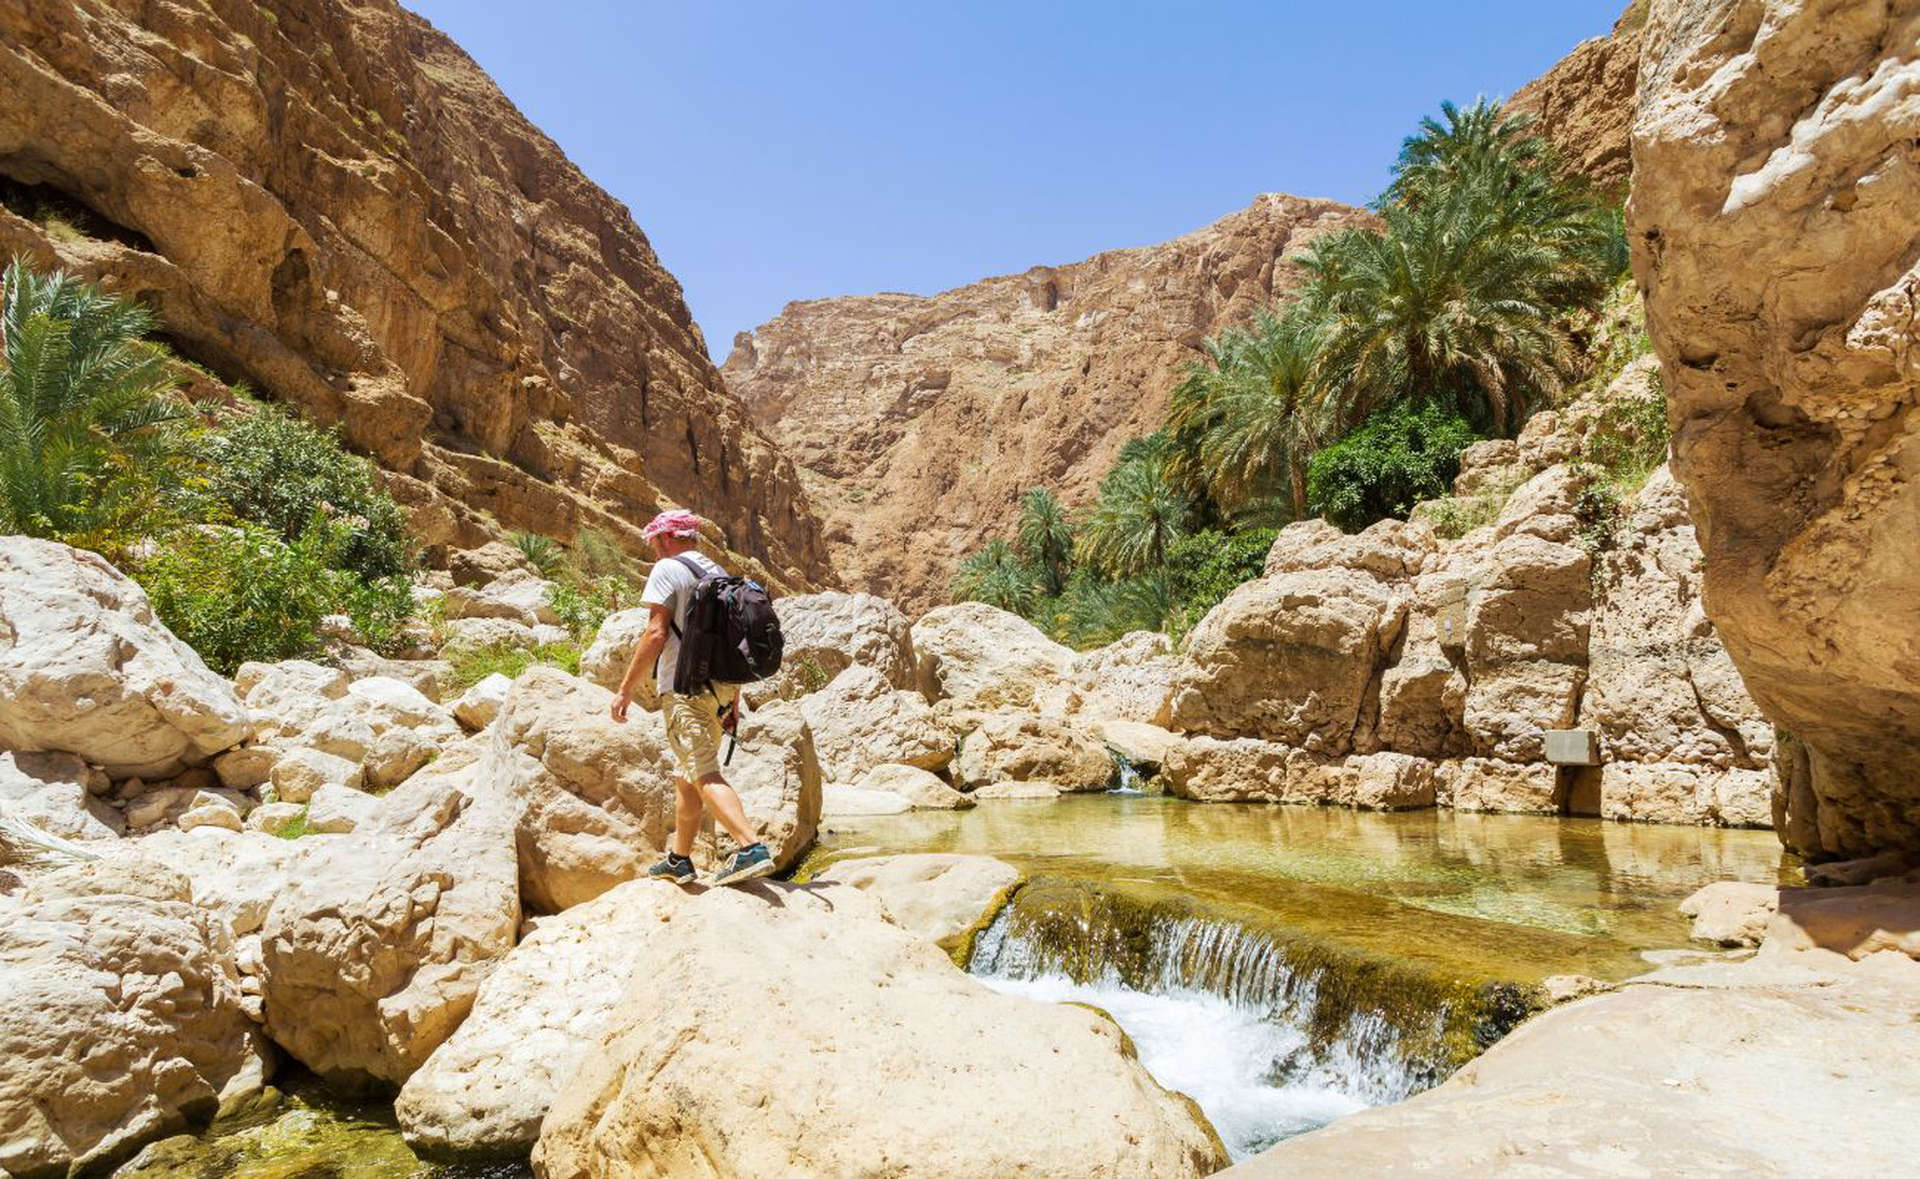  وادي شاب في عمان